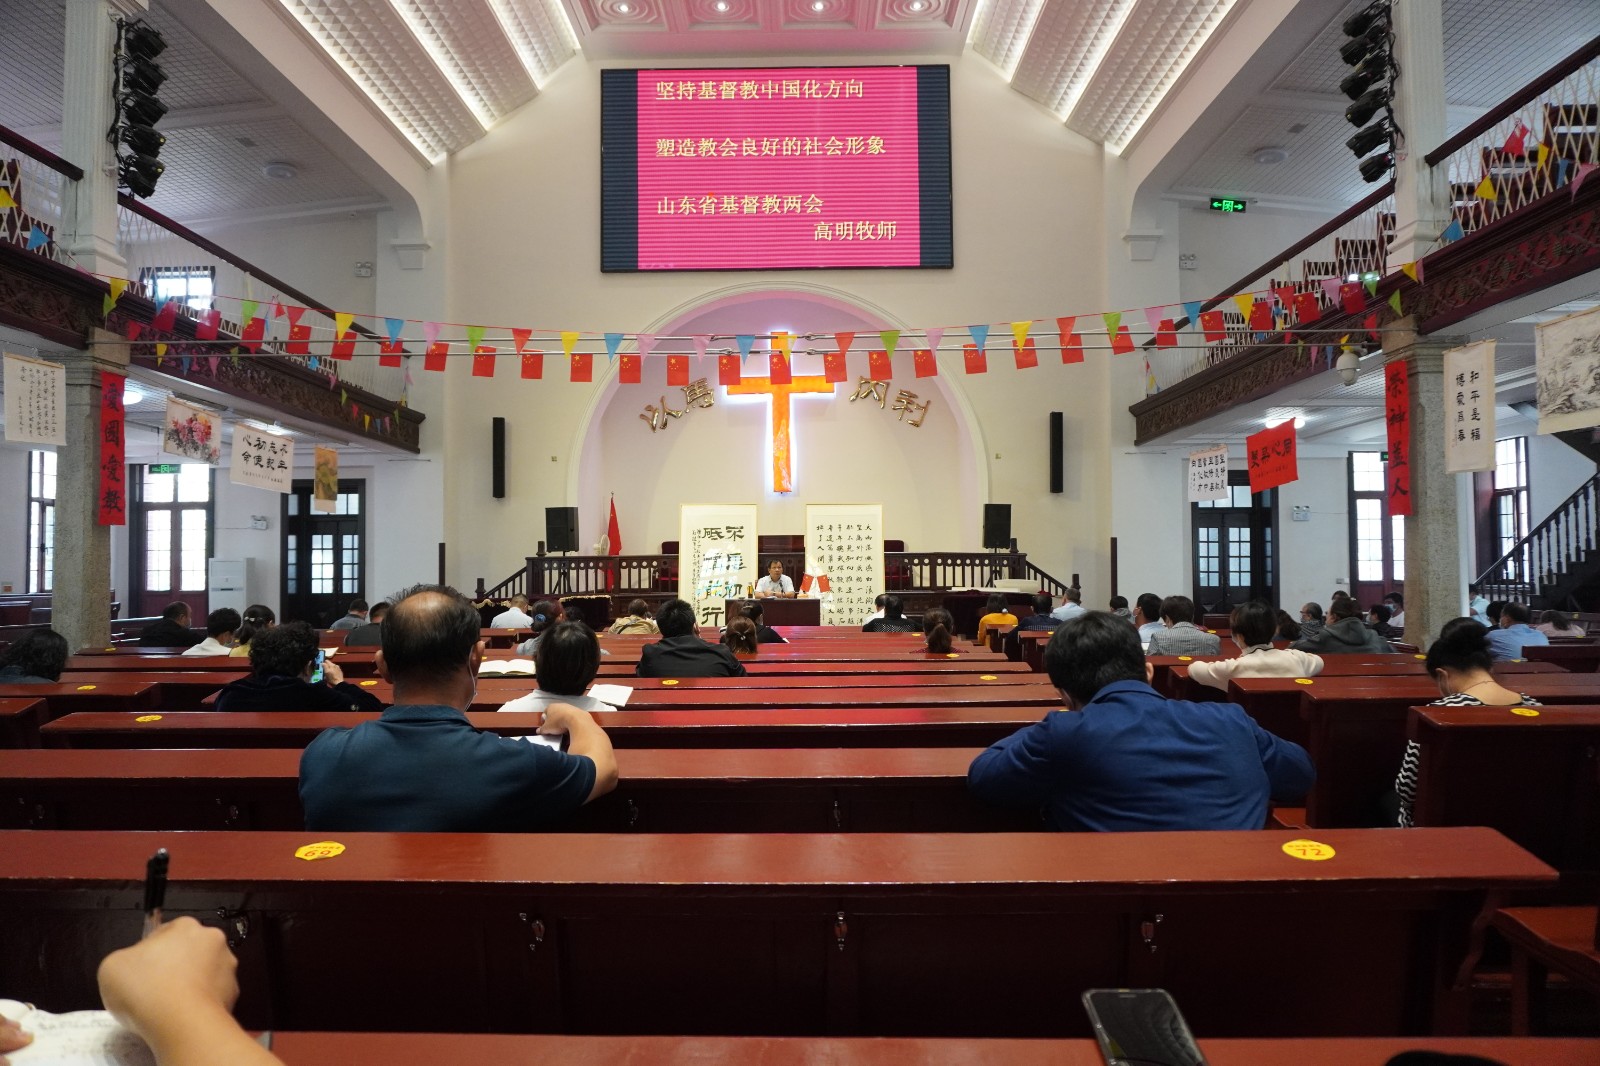 山东省济南市基督教两会举行基督教中国化专题讲座照片2.jpg